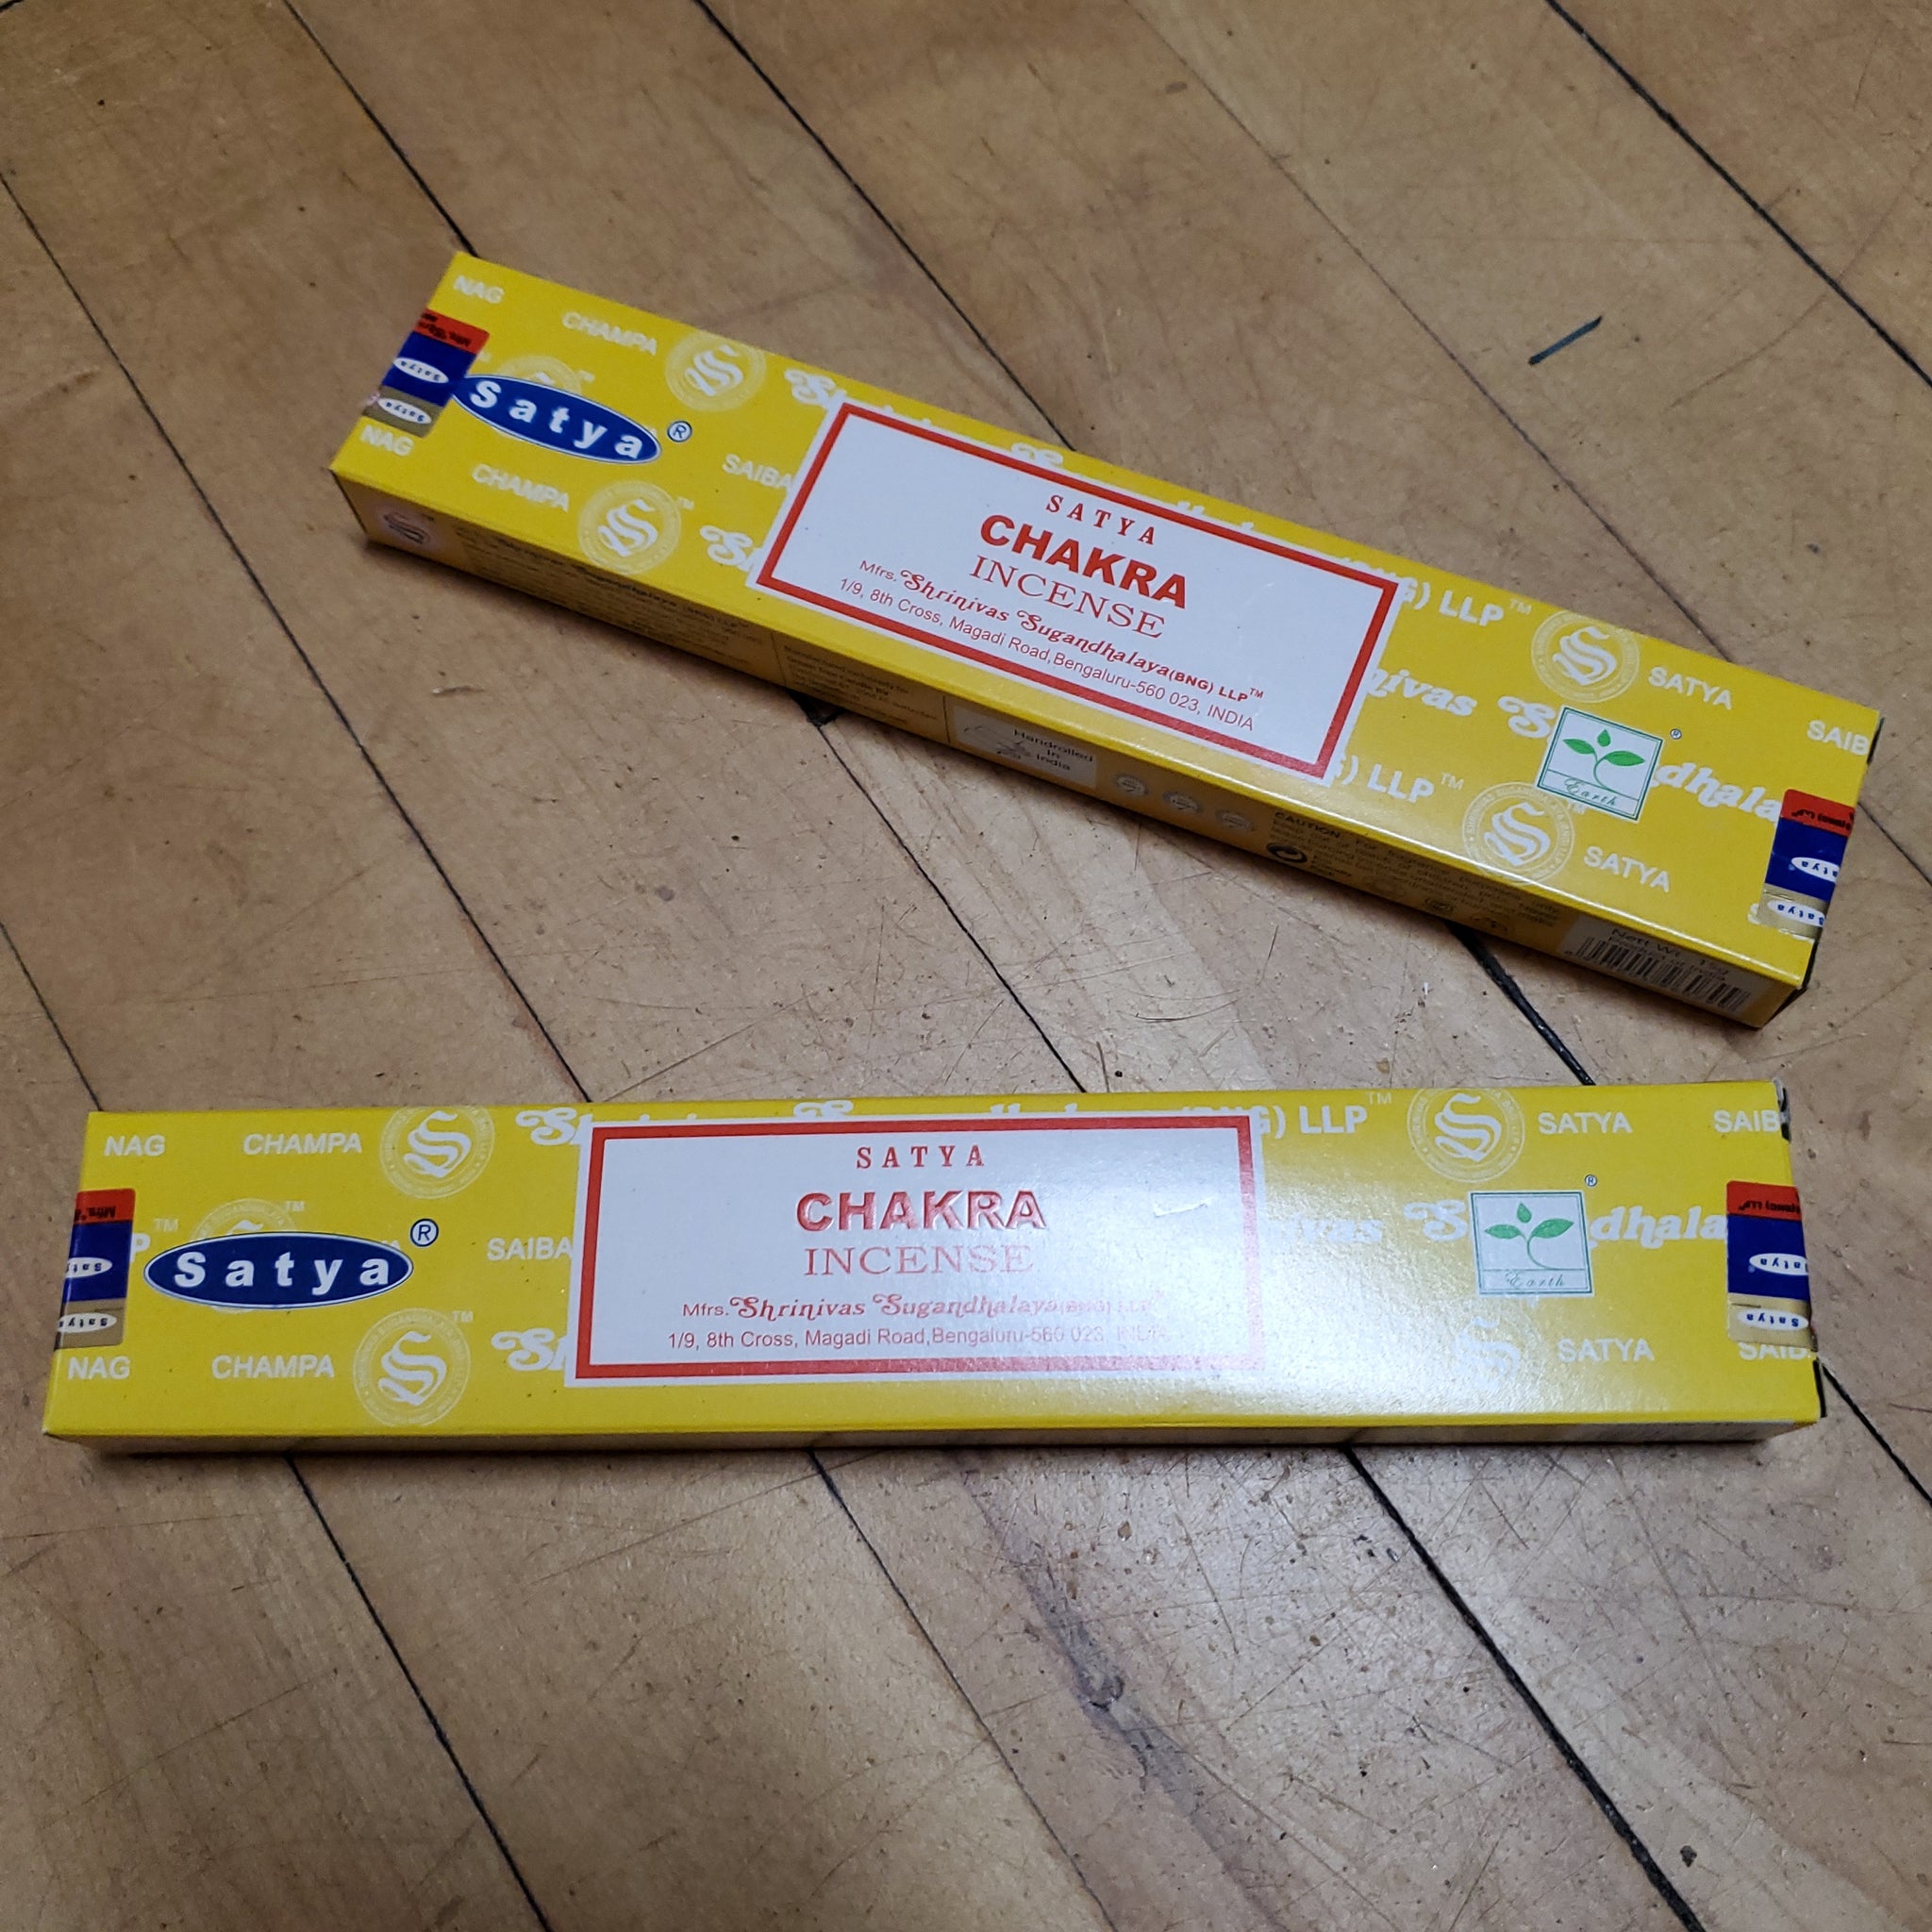 Satya Incense 15g (grams) - Chakra